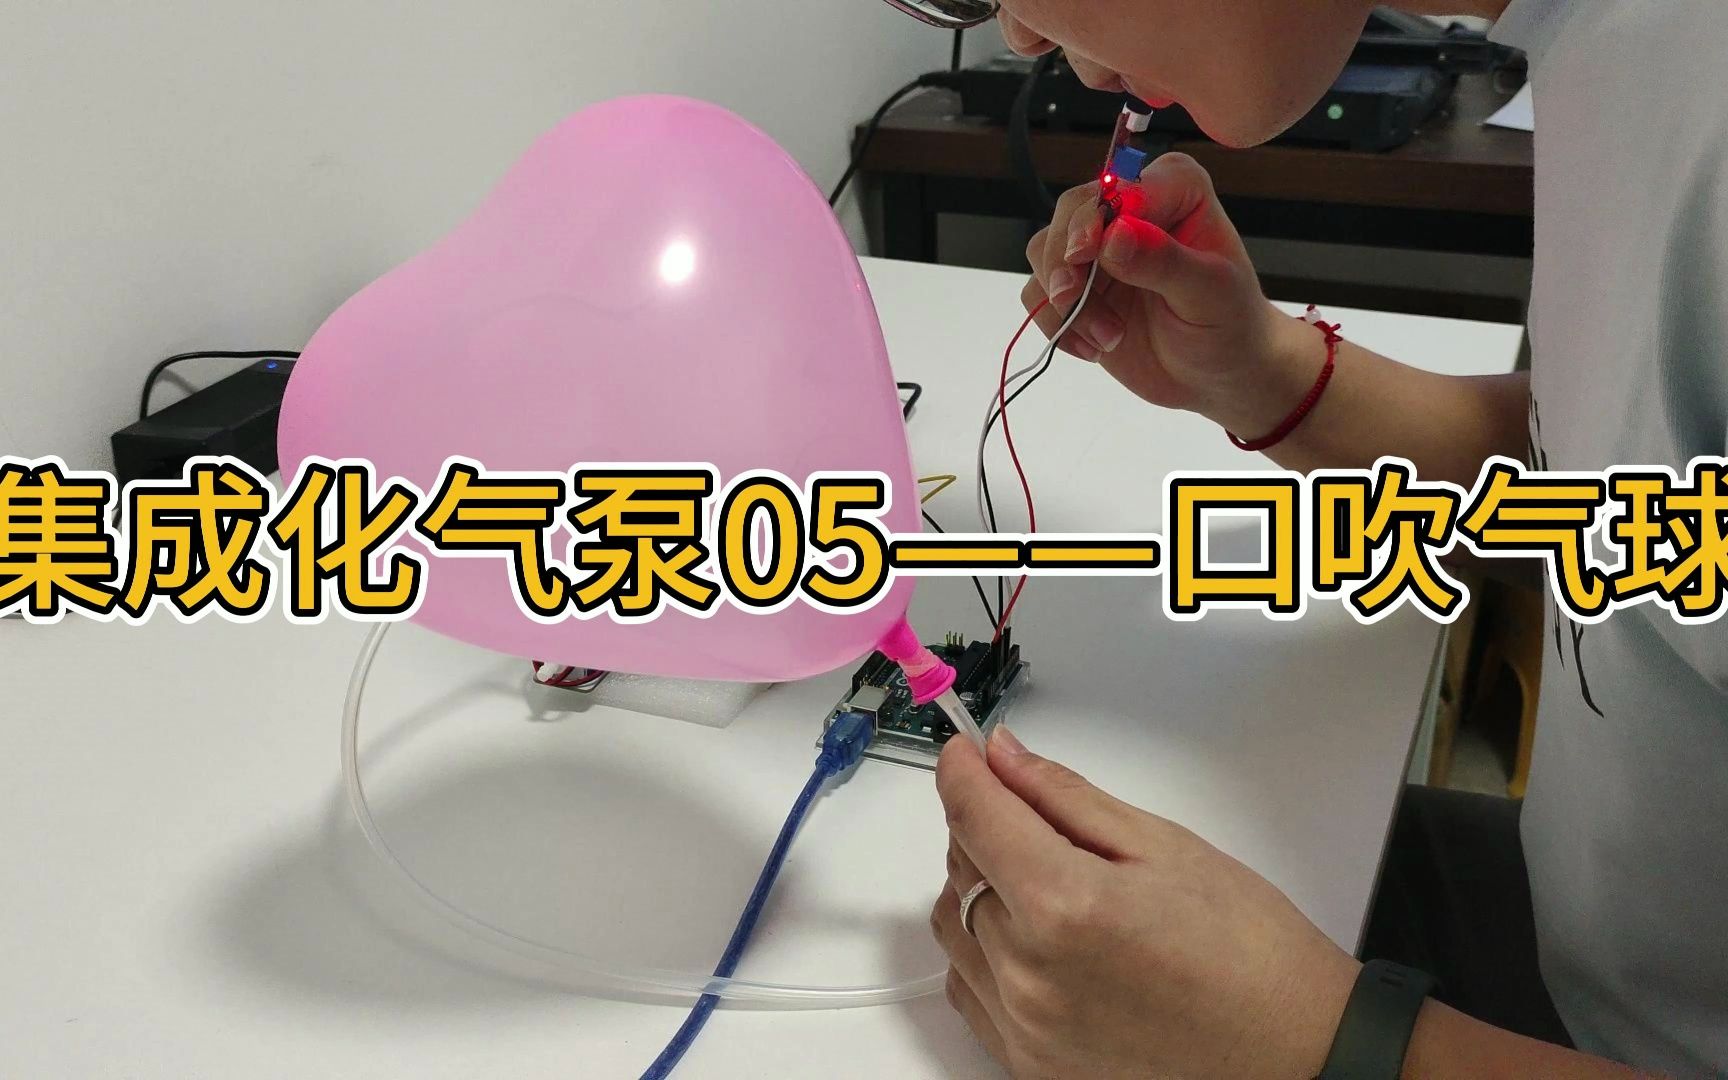 集成化气泵05——口吹气球 Arduino uno交互作品